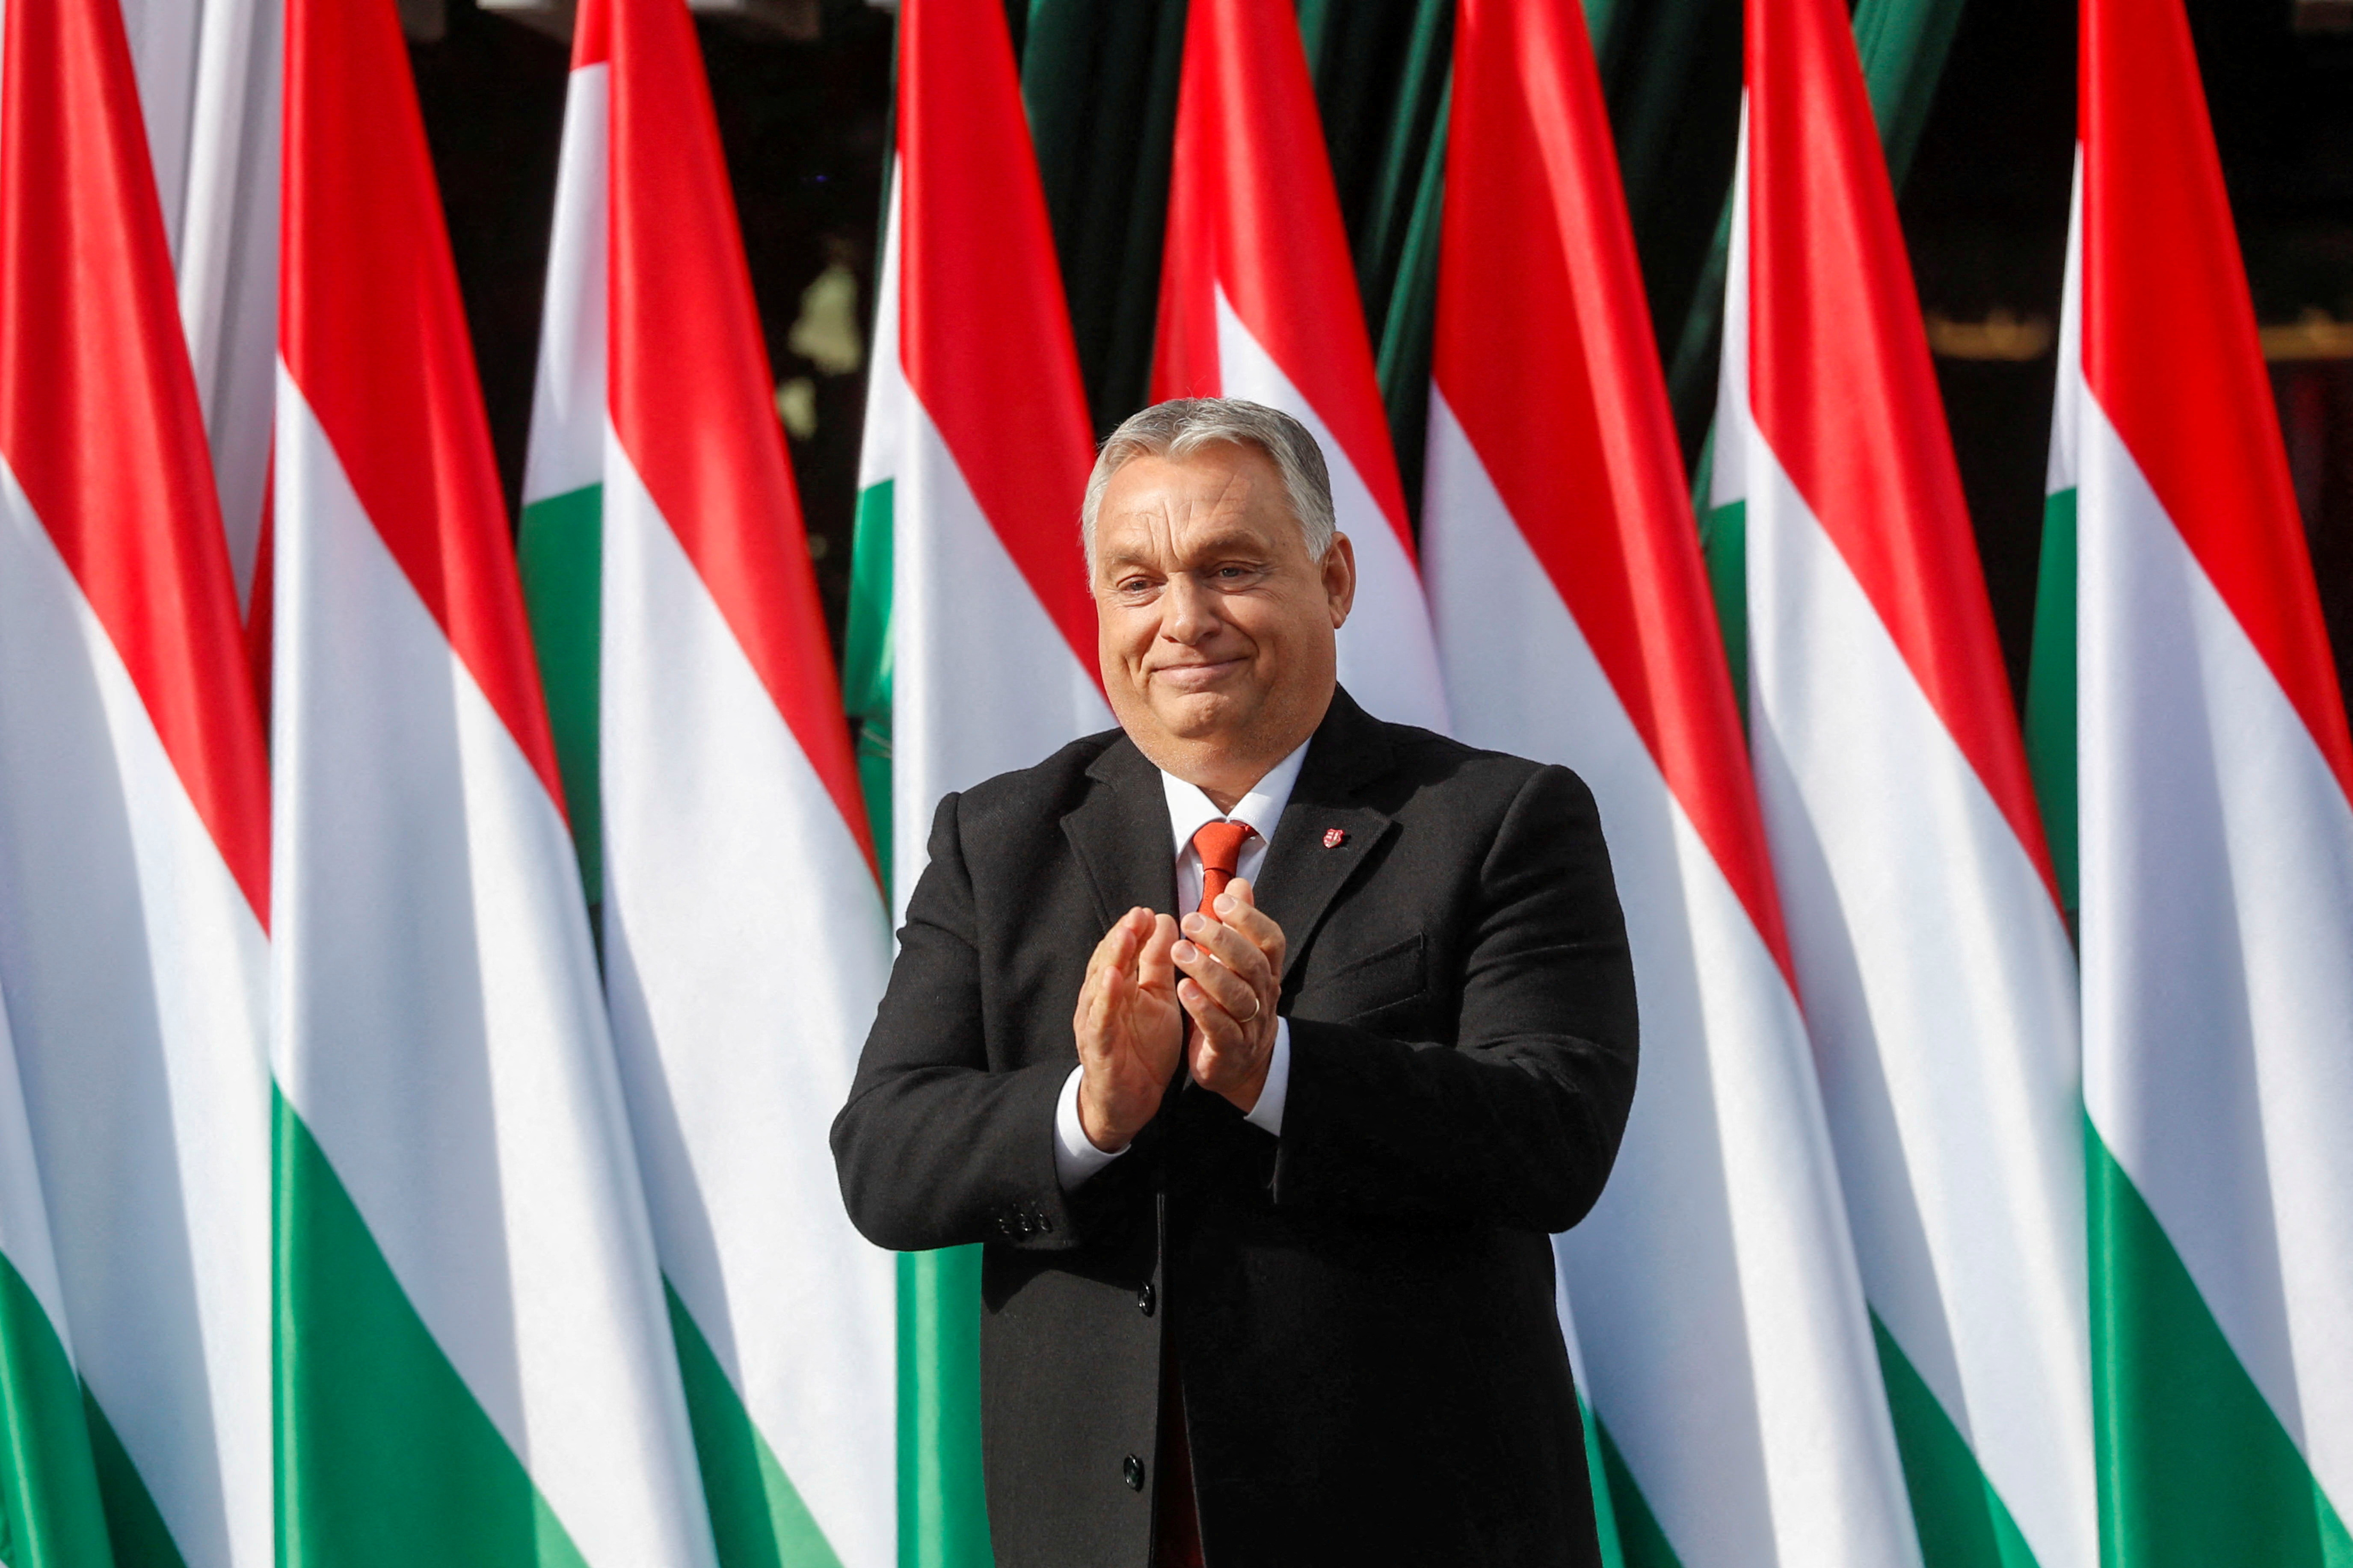 Hungarian Prime Minister Viktor Orban Delivers National Day Speech in Zaraegerseg